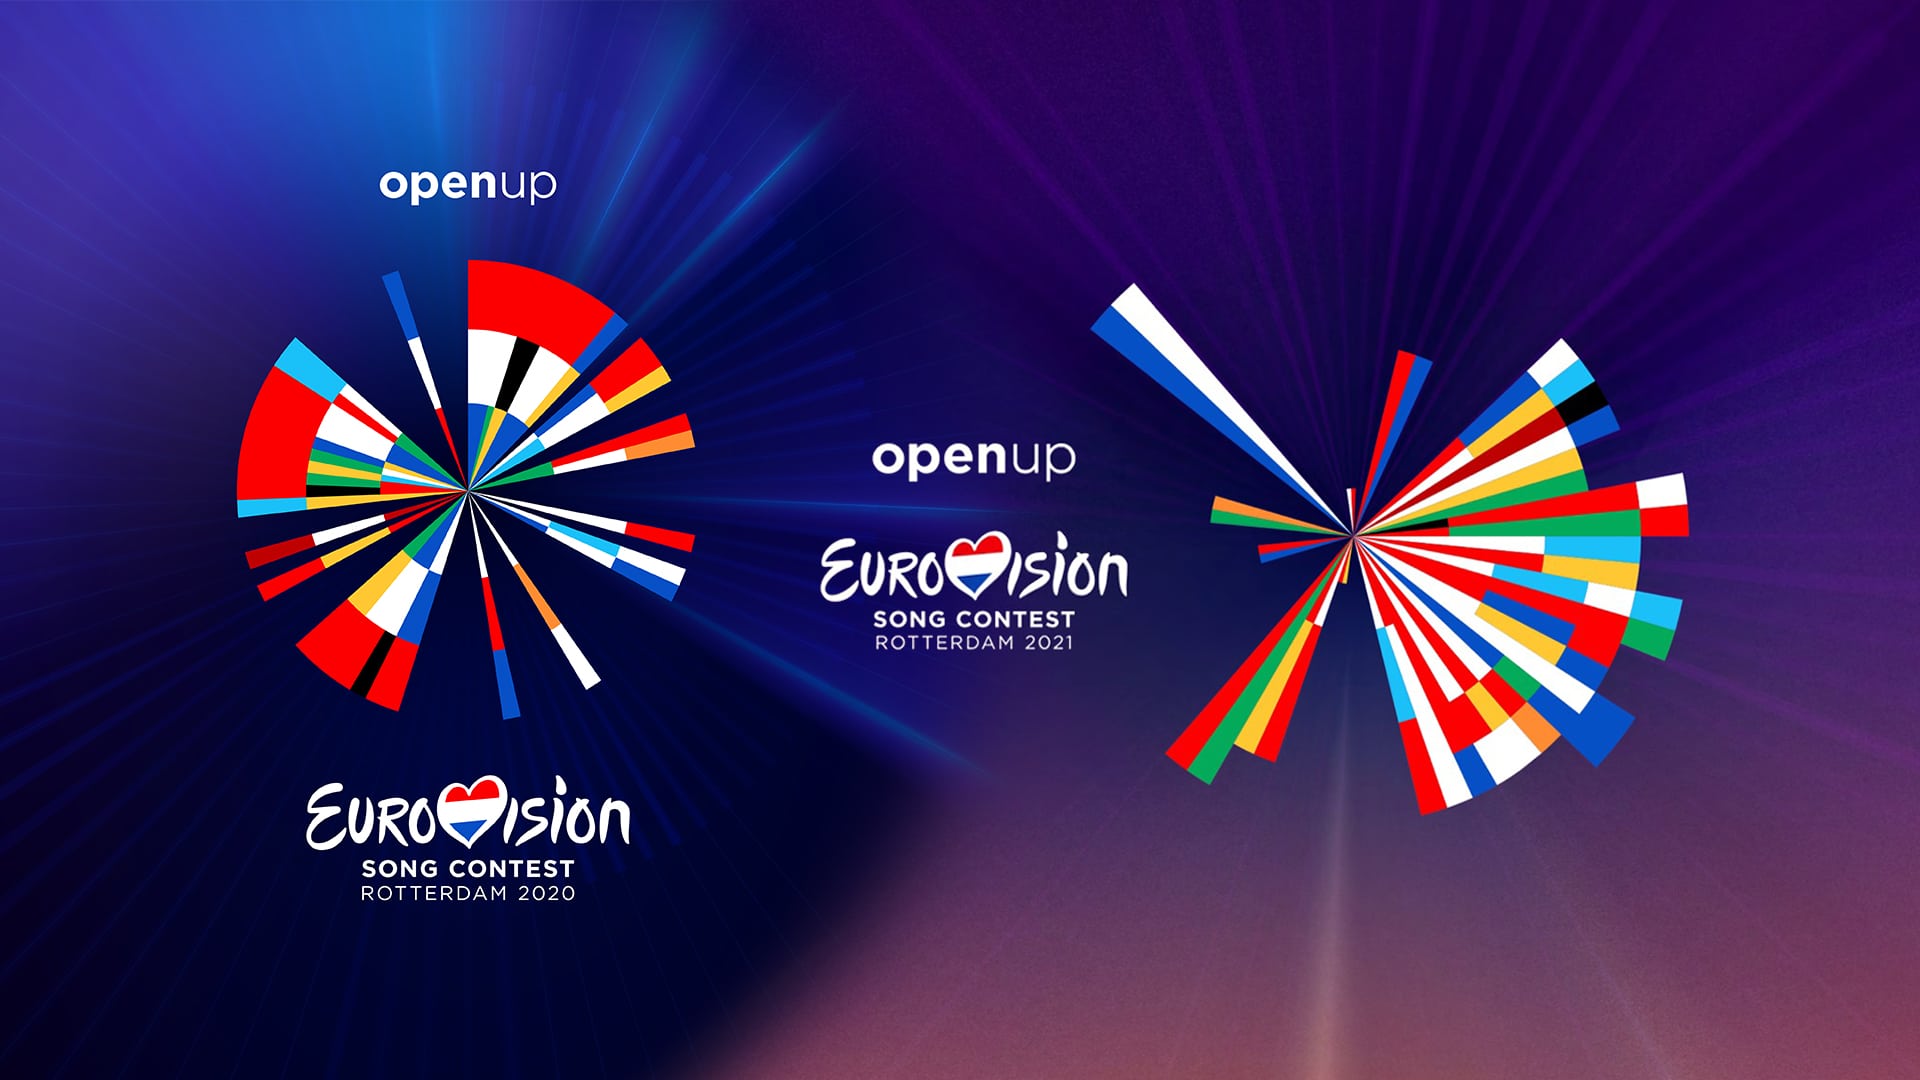 Egy szlogen, két arculat - a rotterdami 2020-as és 2021-es Eurovíziós Dalfesztiválok rendezvényarculatainak, logóinak koncepcióját, felépítését tekintjük át cikkünkben.